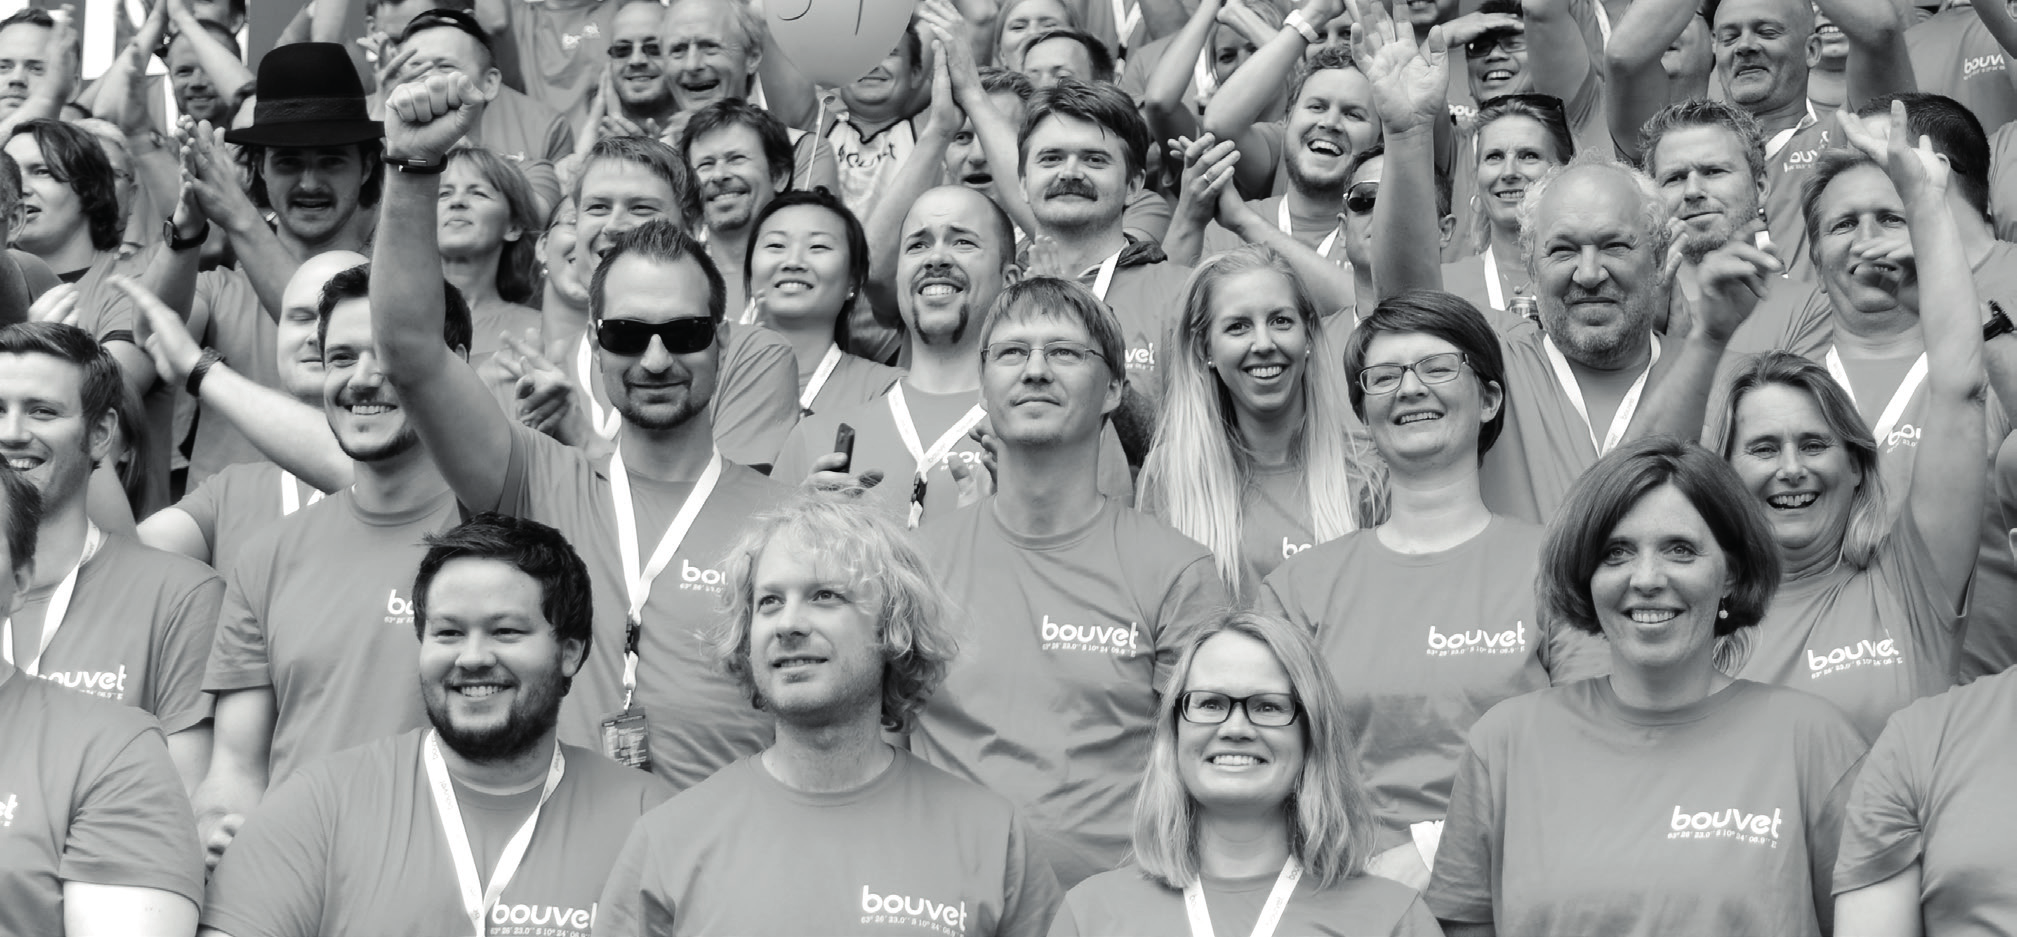 Om Bouvet Bouvet er et konsulentfirma som leverer digitale tjenester. Ved kvartalets slutt var det 1 090 ansatte fordelt på 14 kontorer i Norge og Sverige.